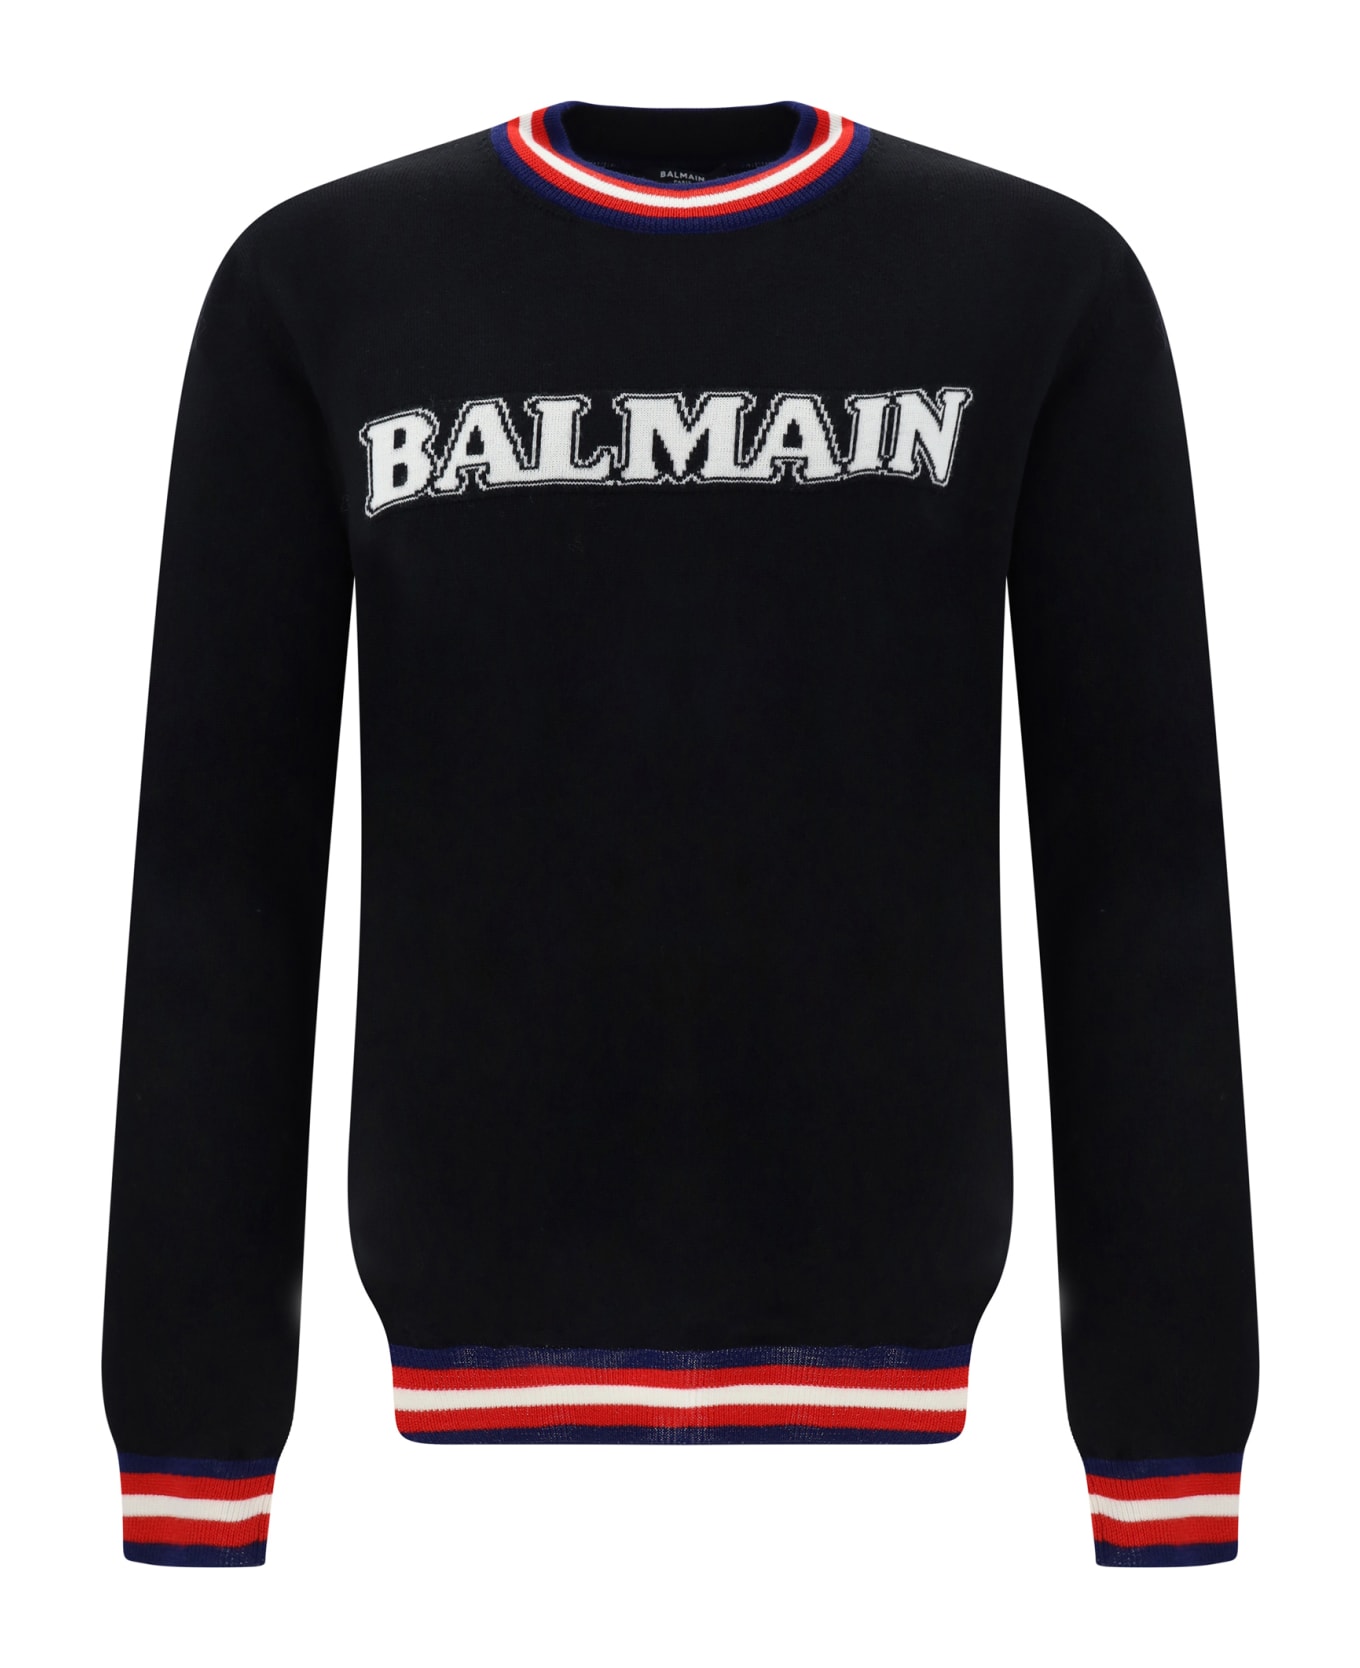 Balmain Sweater - Noir/naturel